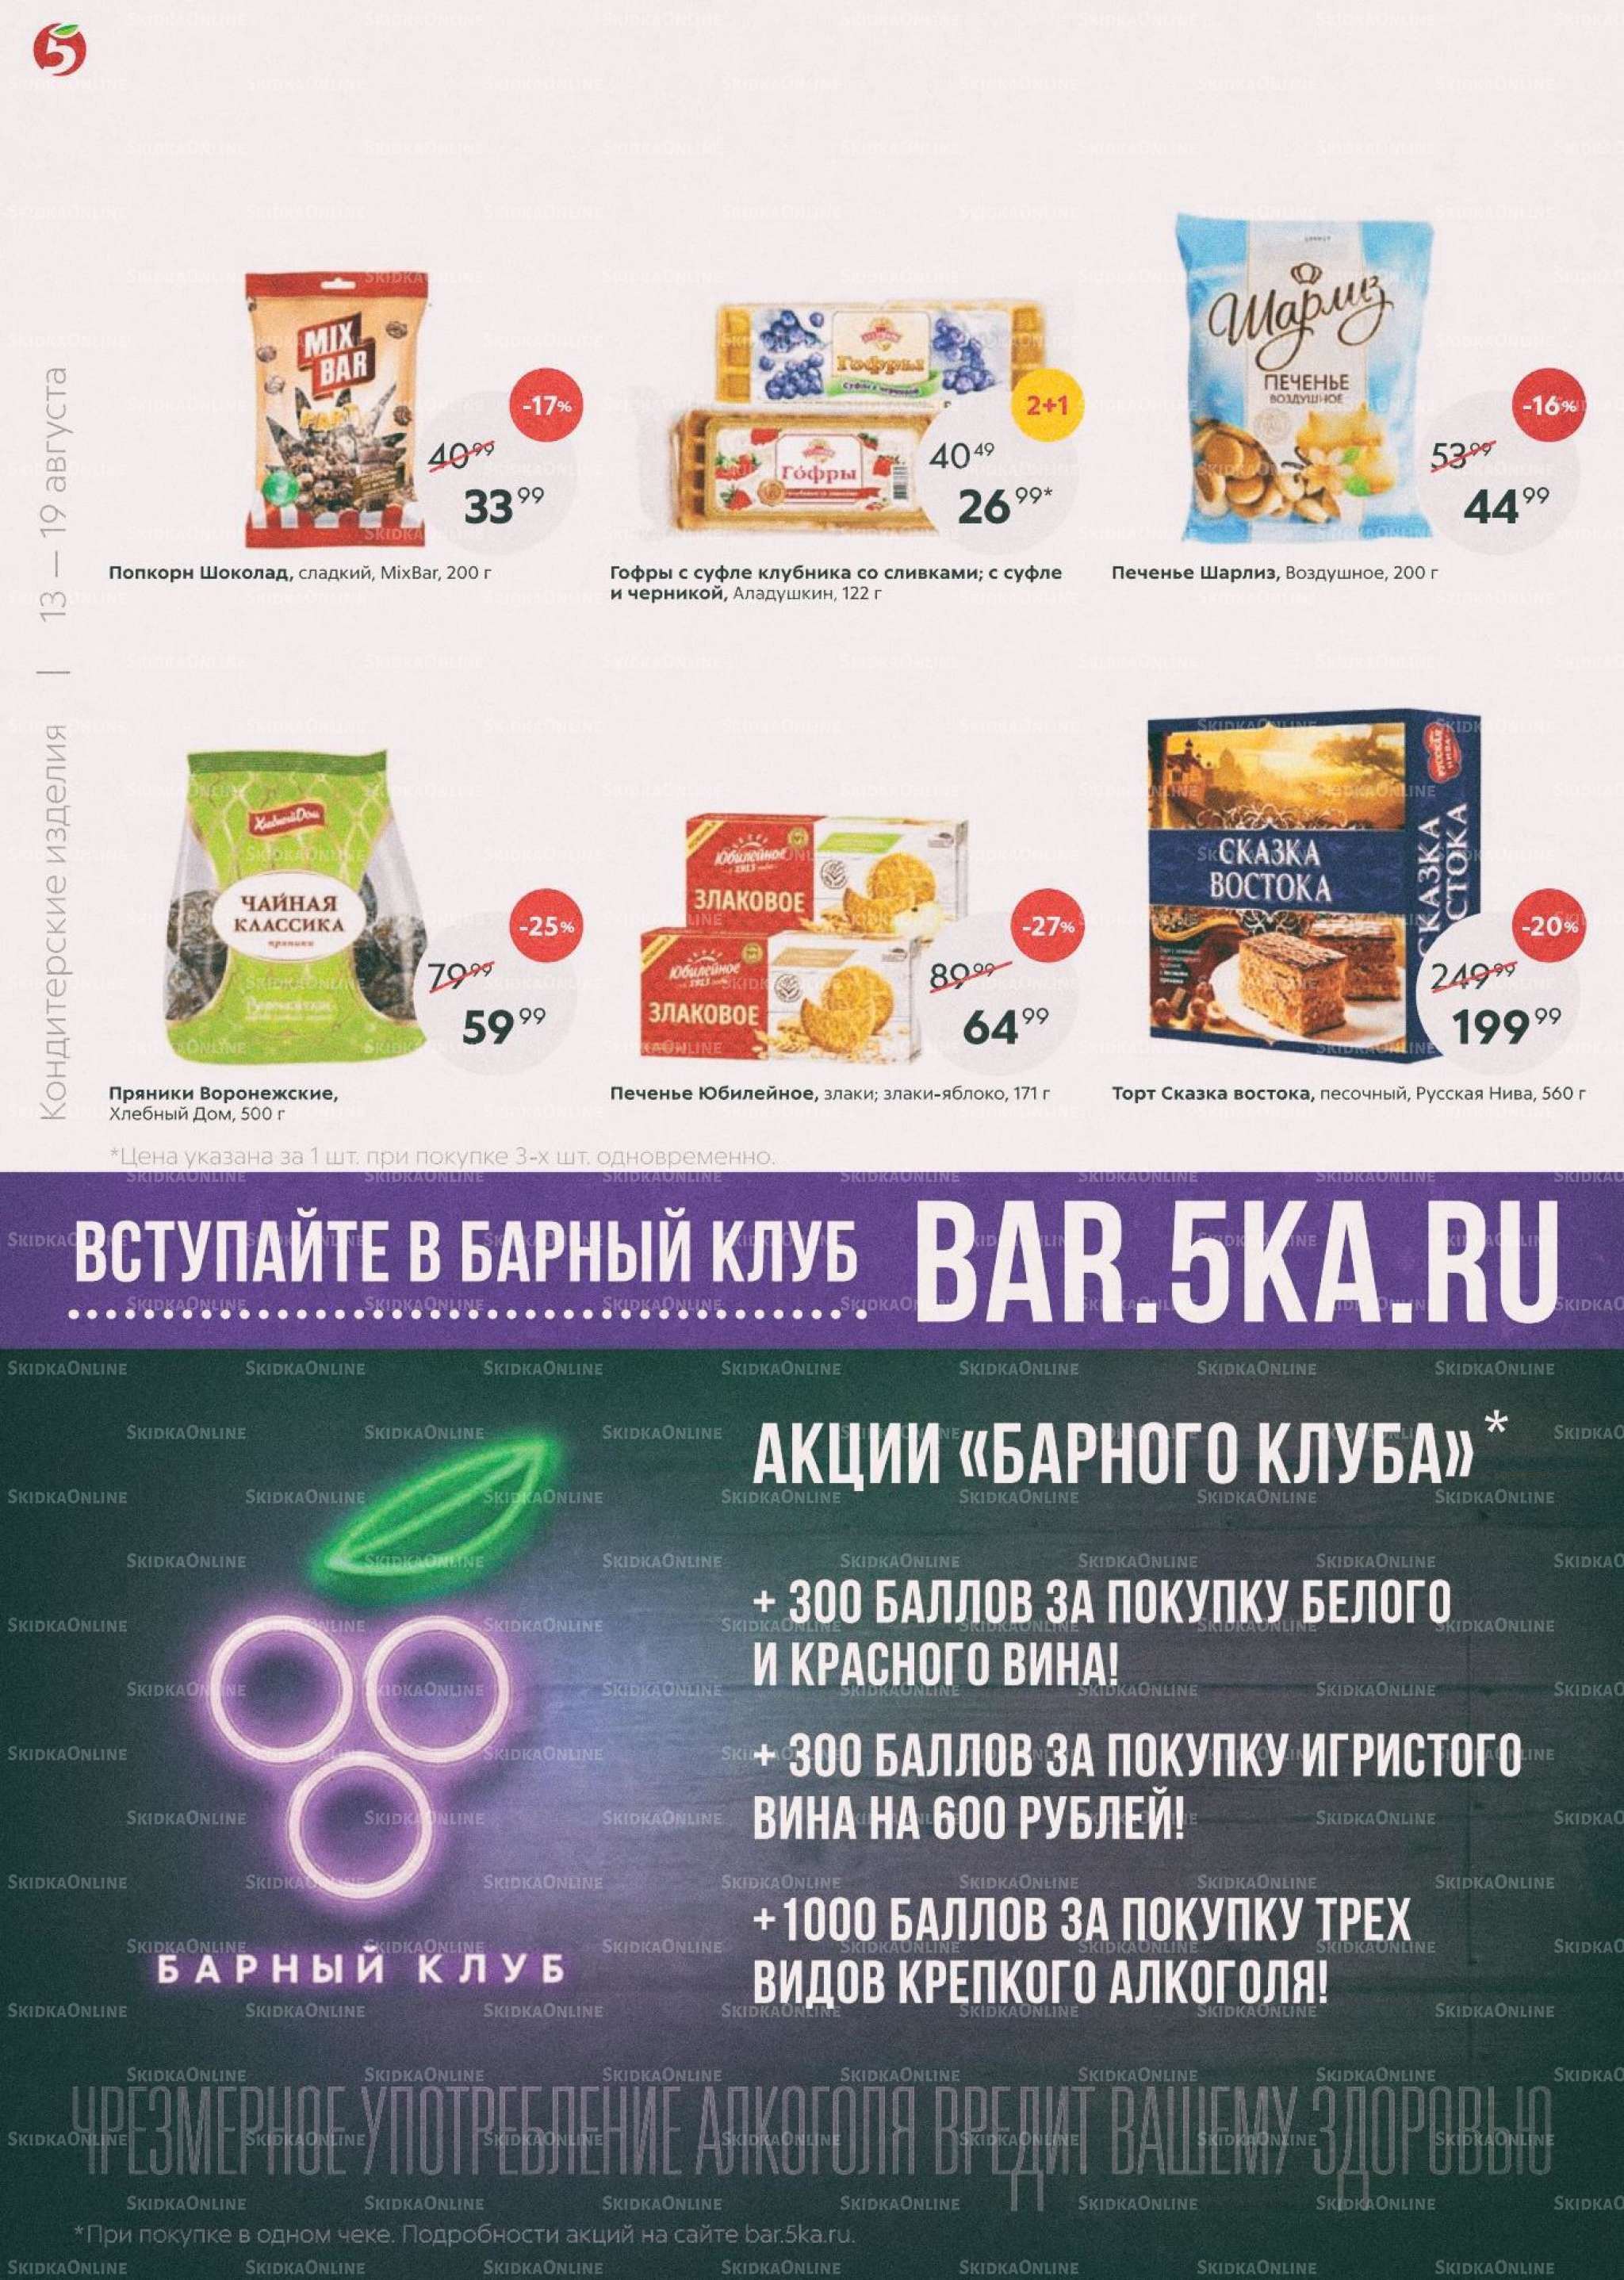 Акции в магазинах Пятерочка с 13 по 19 августа.